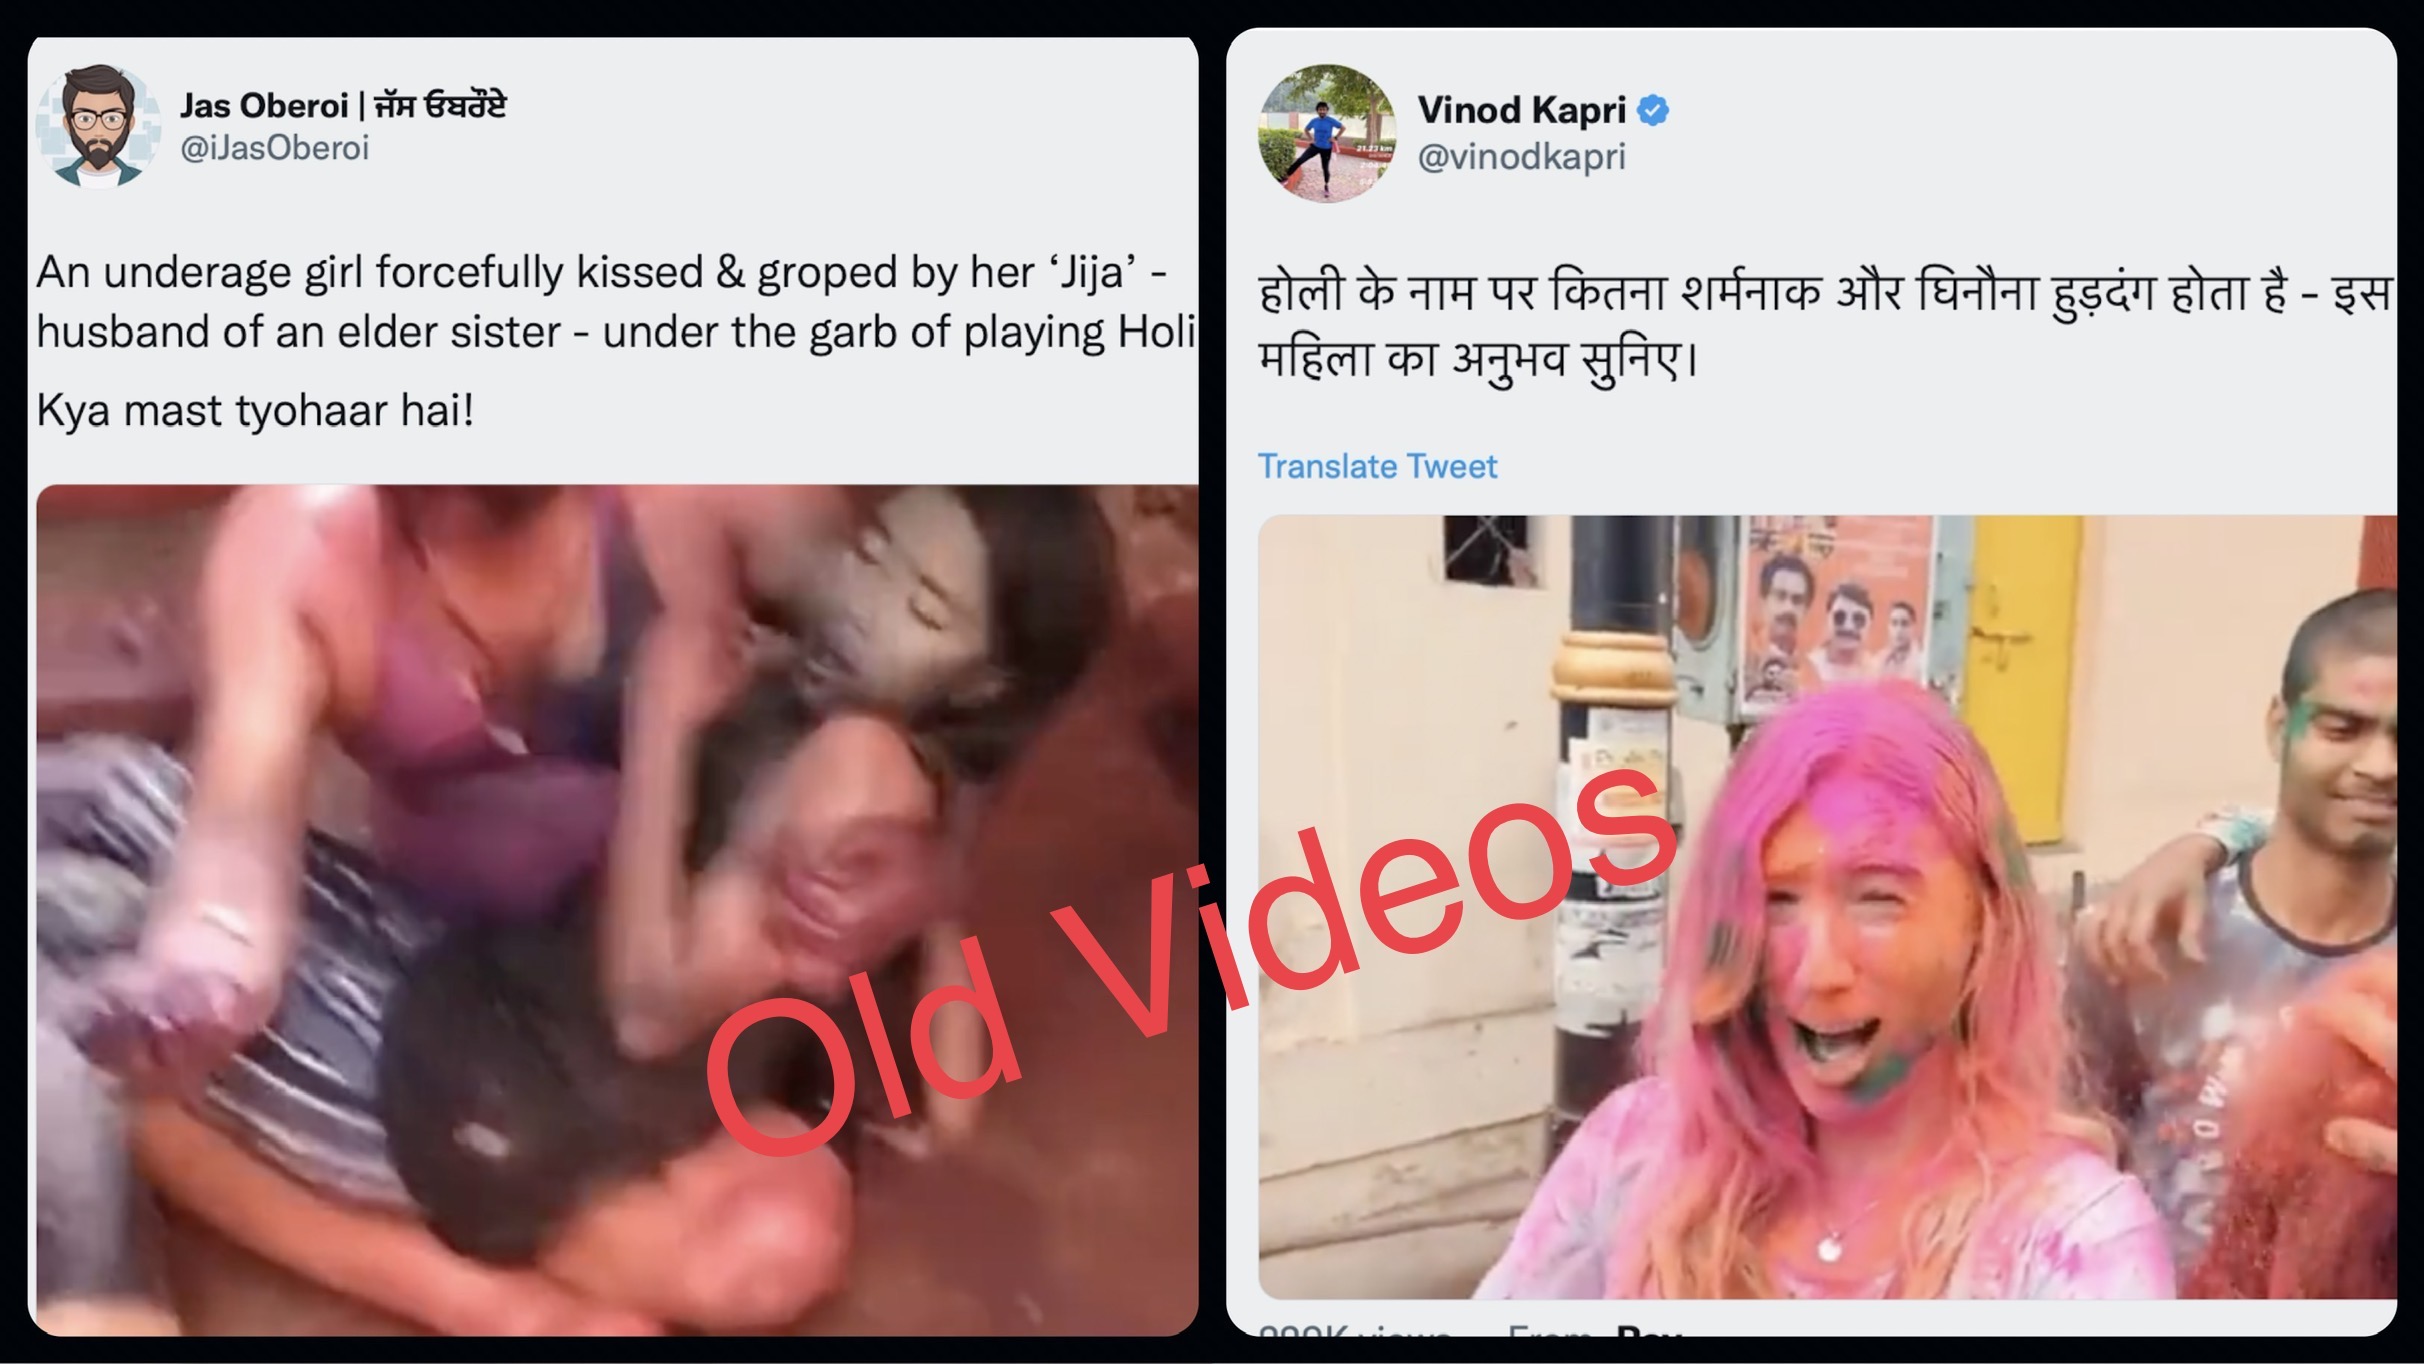 Holi Porn Videos Sister Hd - Old videos maligning Hindu festival of Holi in circulation on social media